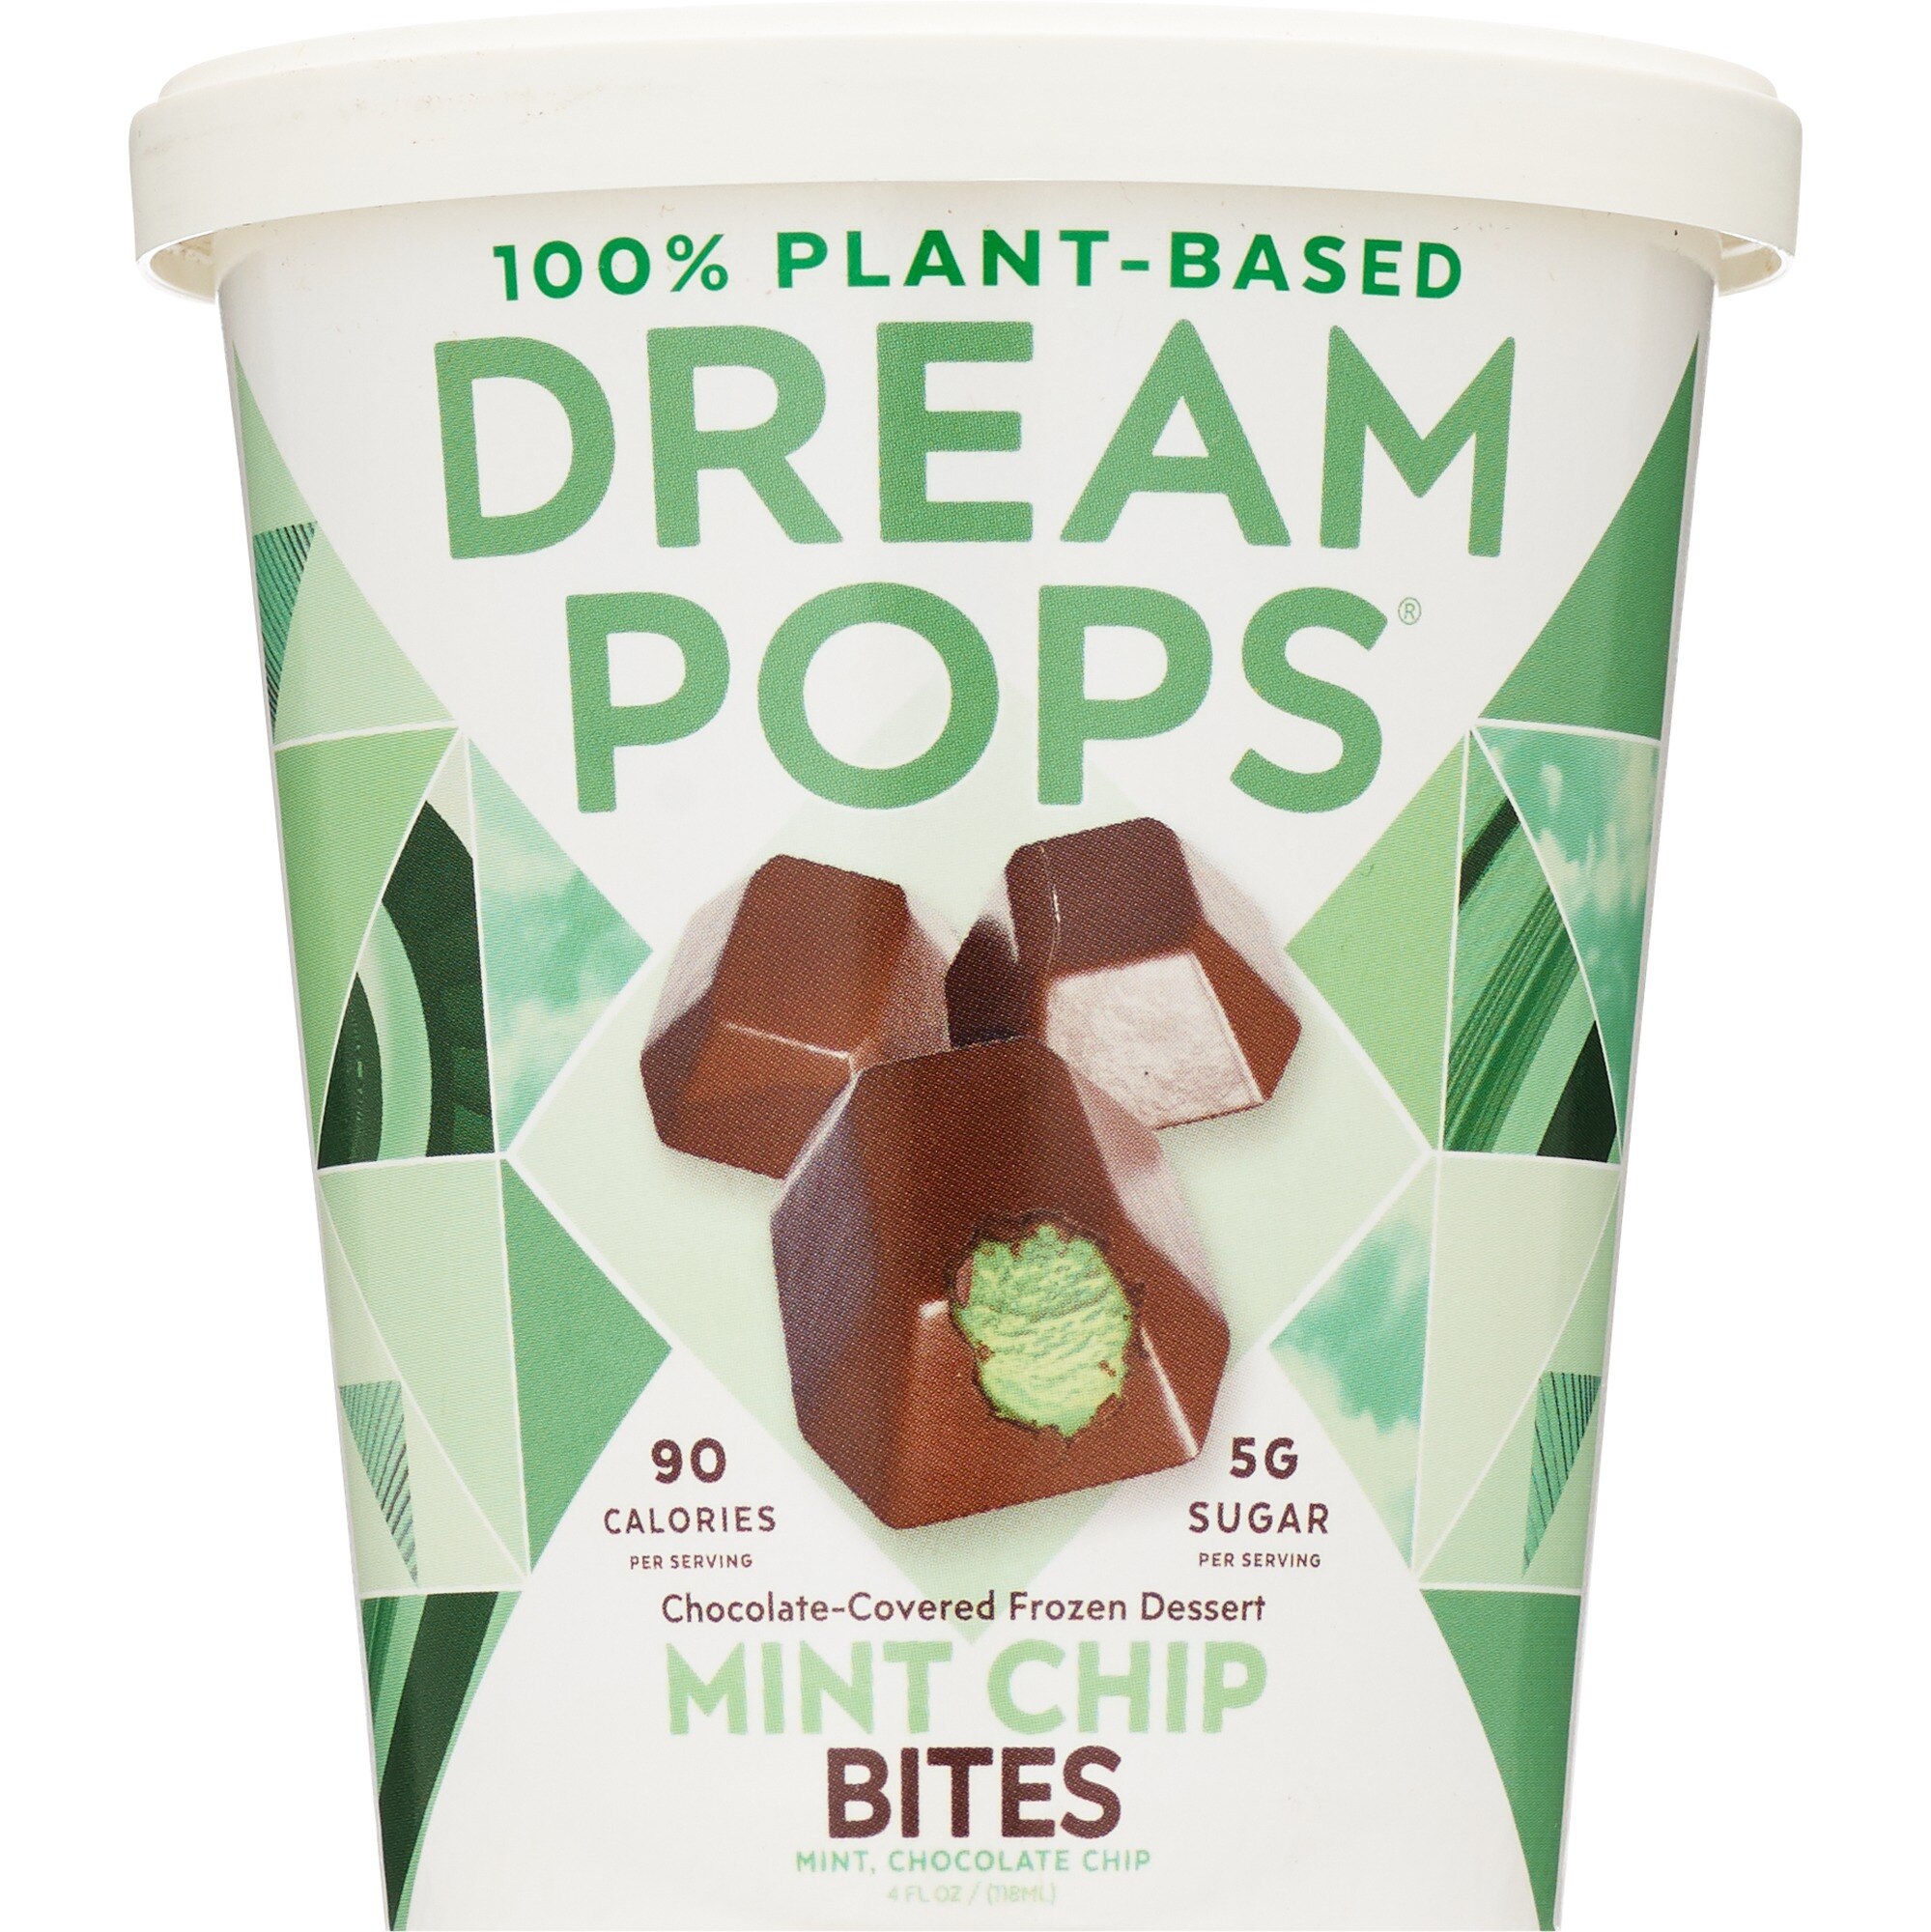 DreamPops Dream Pops Bites, Mint Chip - 4 Oz , CVS